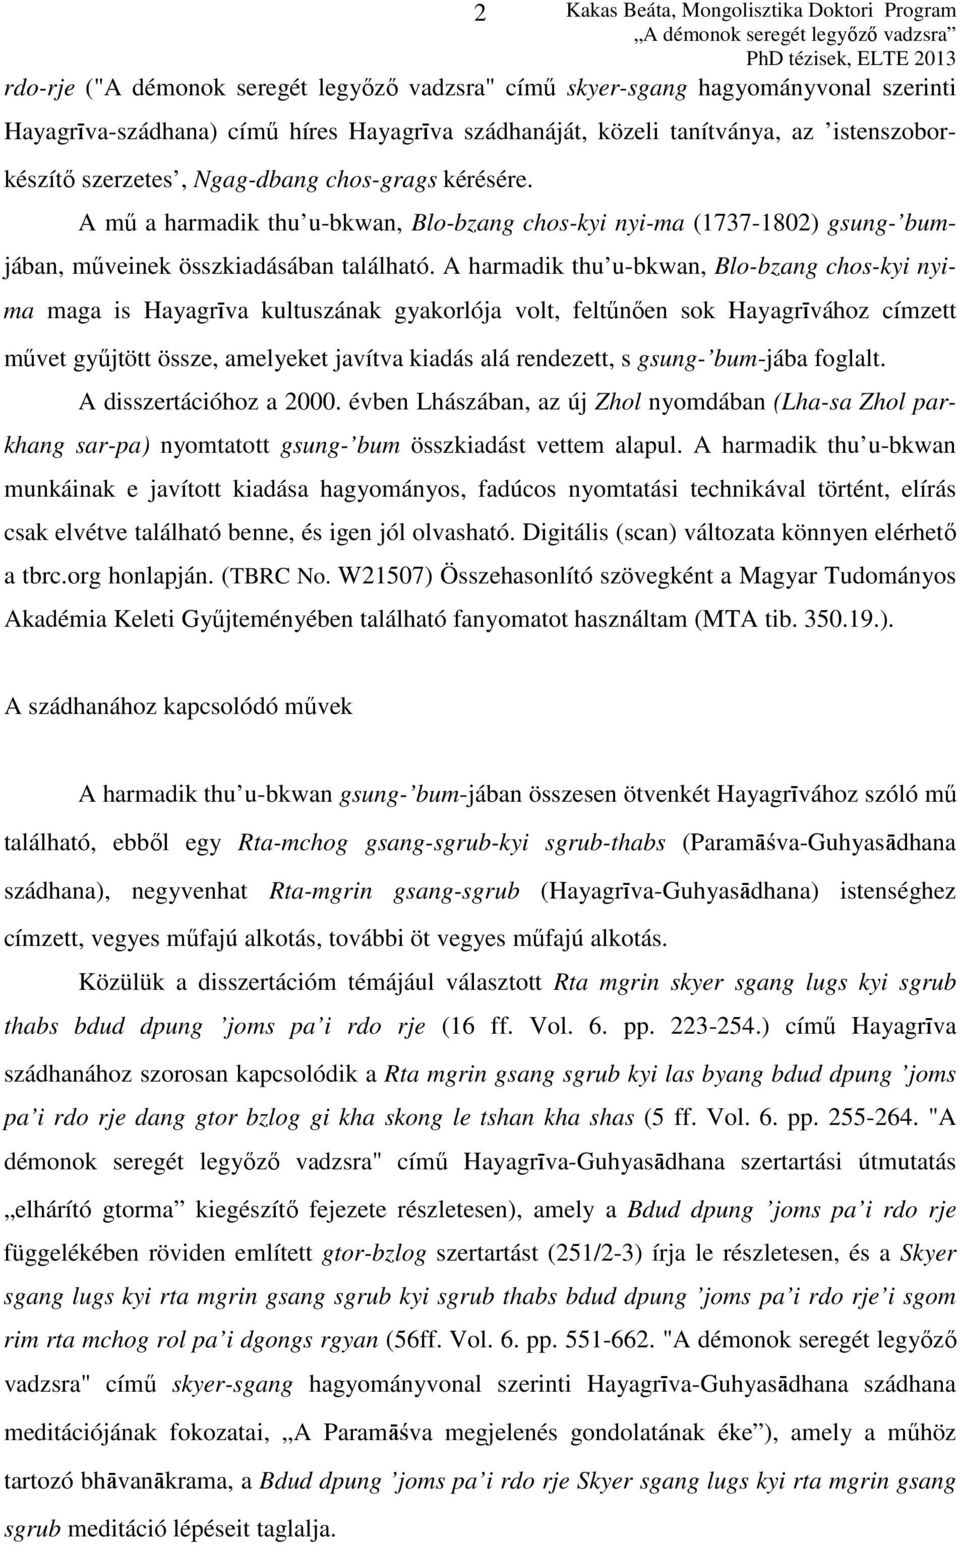 A harmadik thu u-bkwan, Blo-bzang chos-kyi nyima maga is Hayagríva kultuszának gyakorlója volt, feltűnően sok Hayagrívához címzett művet gyűjtött össze, amelyeket javítva kiadás alá rendezett, s